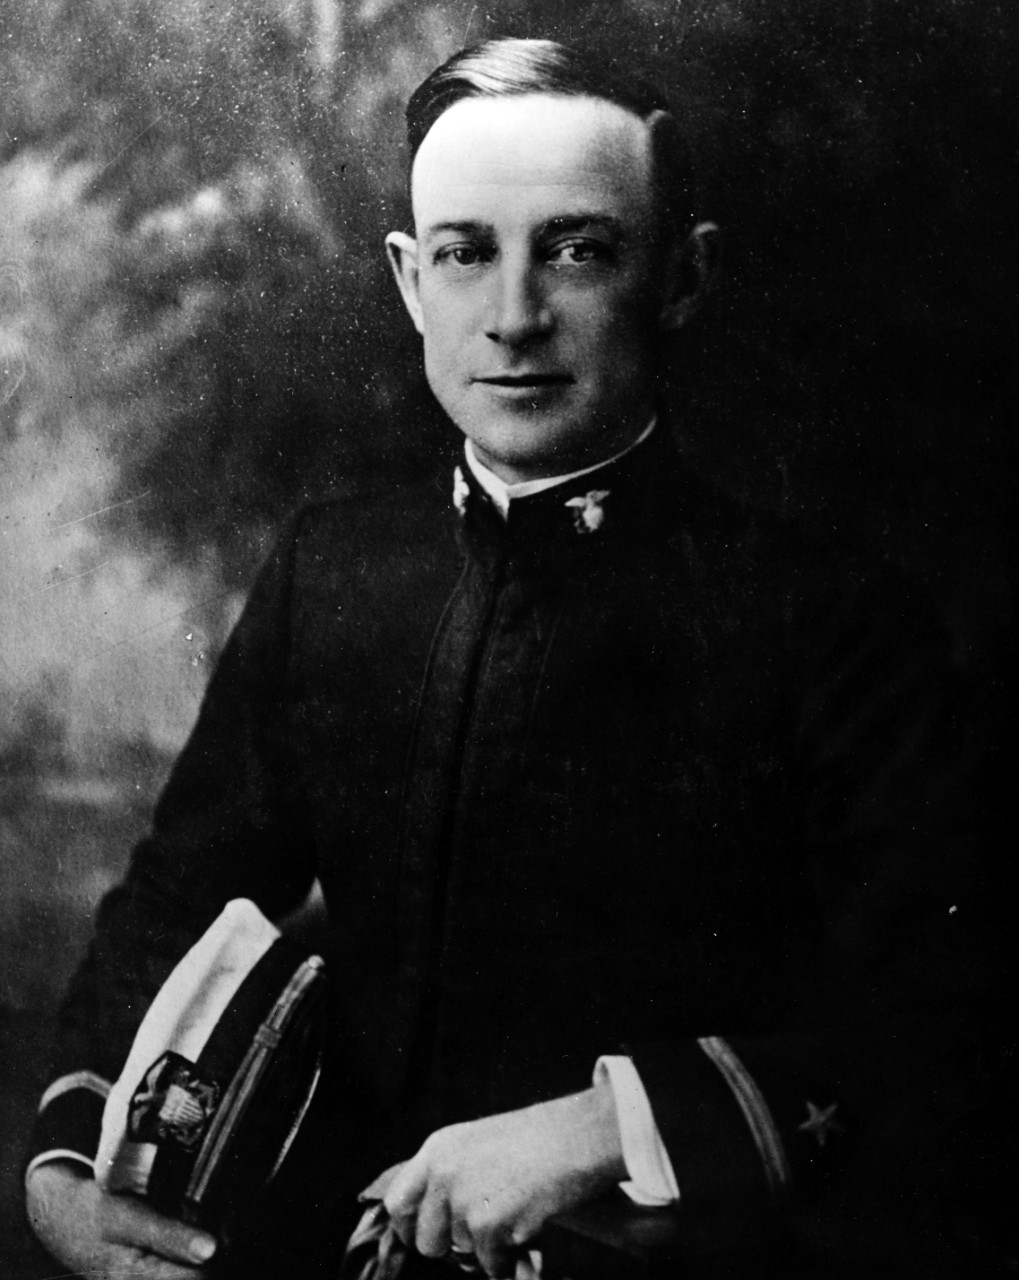 Ensign Watson B. Donahue, USNRF